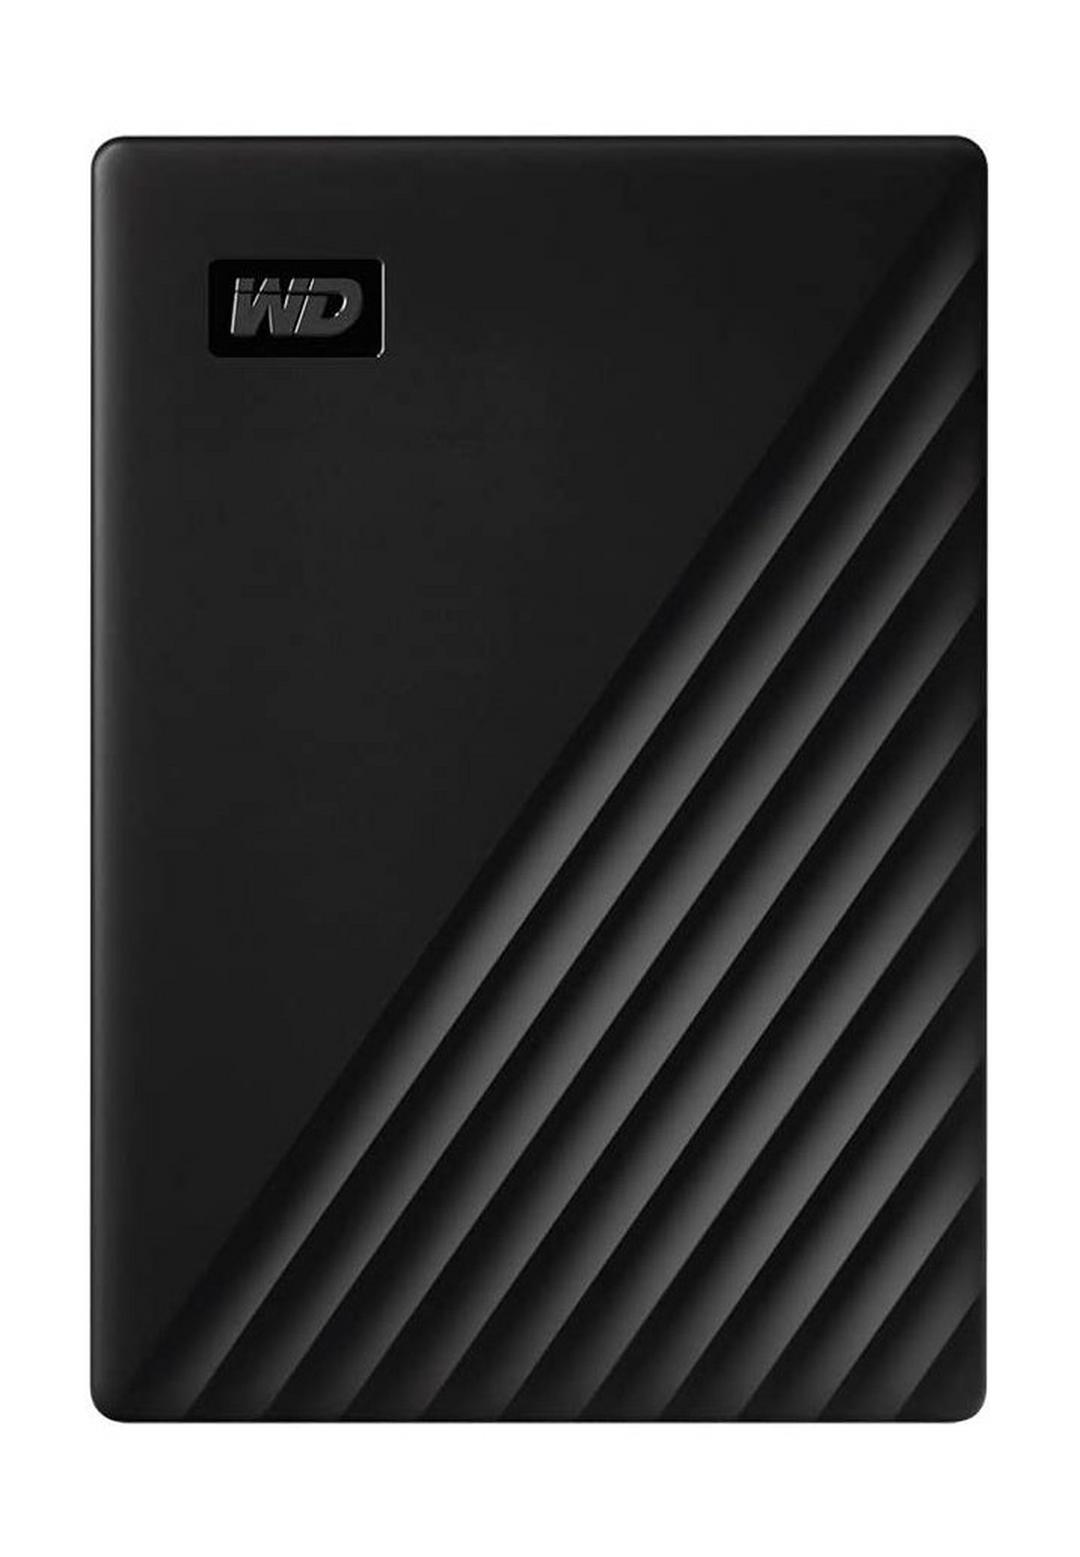 WD 4TB My Passport Portable External Hard Drive (WDBPKJ0040BBK-WESN) - Black